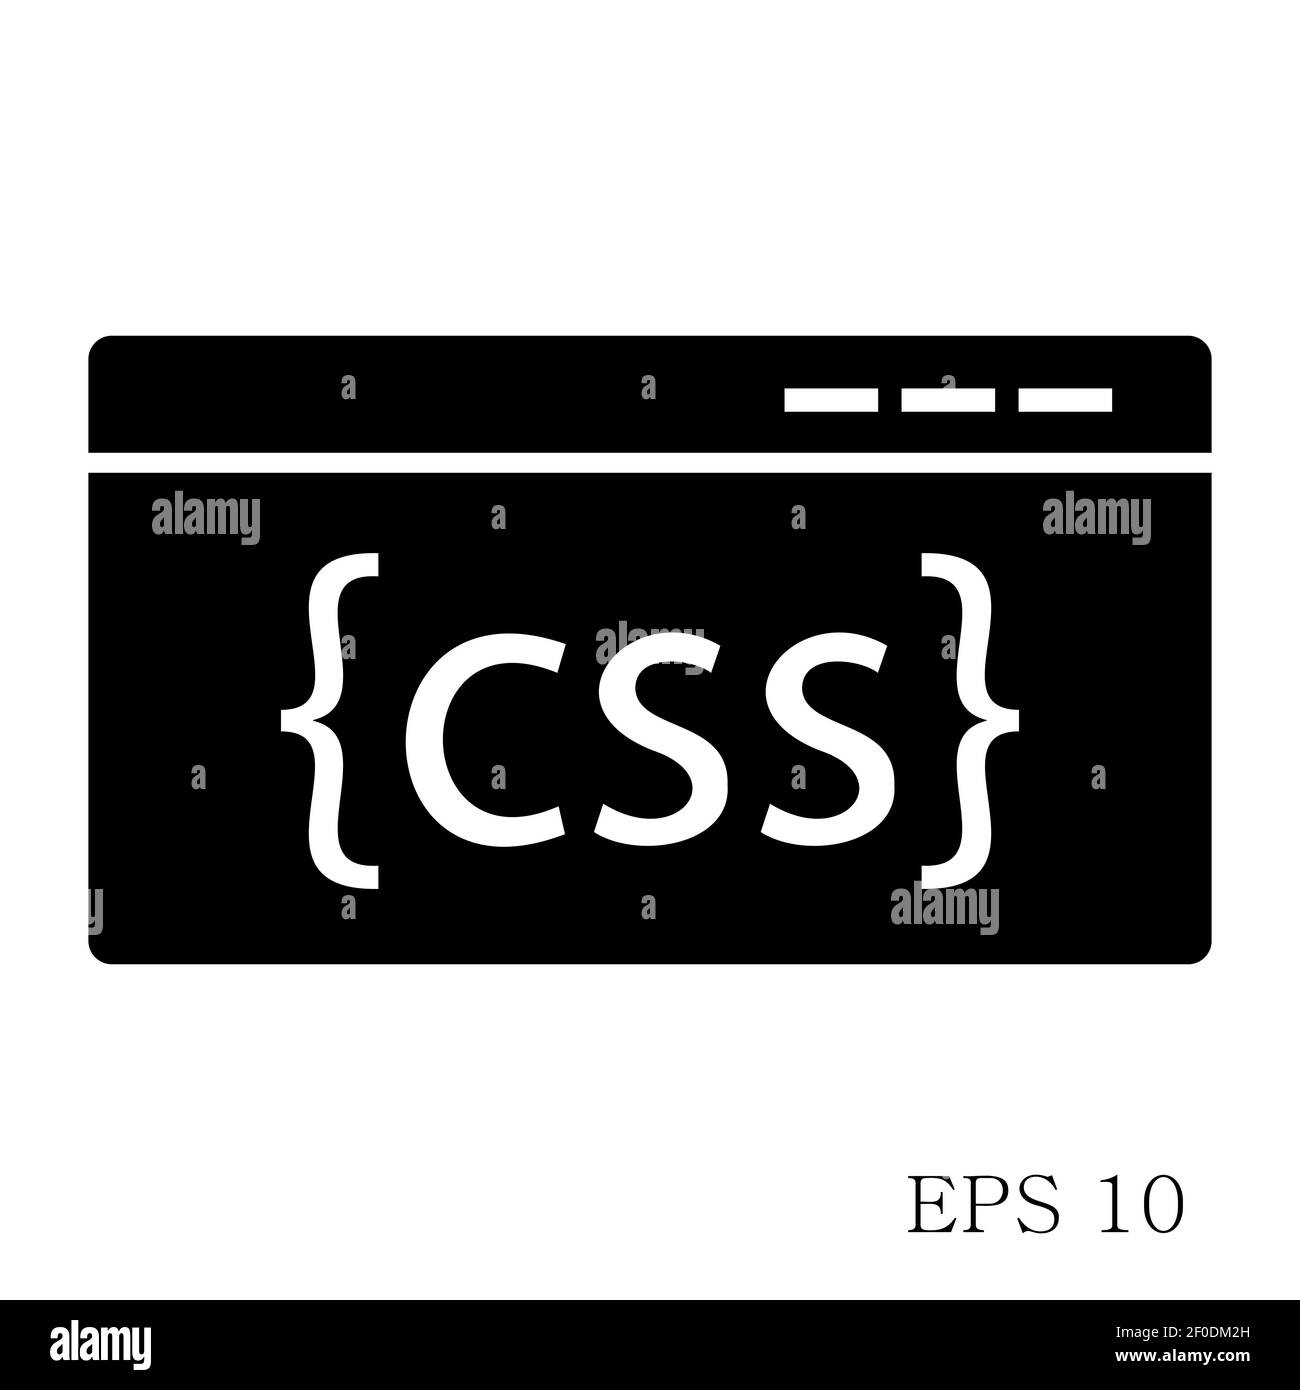 CSS Code Icon sẽ giúp bạn có cái nhìn chính xác về cách tạo ra những đoạn code tuyệt đẹp và tiên tiến cho trang web của mình. Icon này sẽ dẫn dắt bạn vào thế giới mã nguồn và cho phép bạn trải nghiệm những giá trị sáng tạo và công nghệ mới nhất.